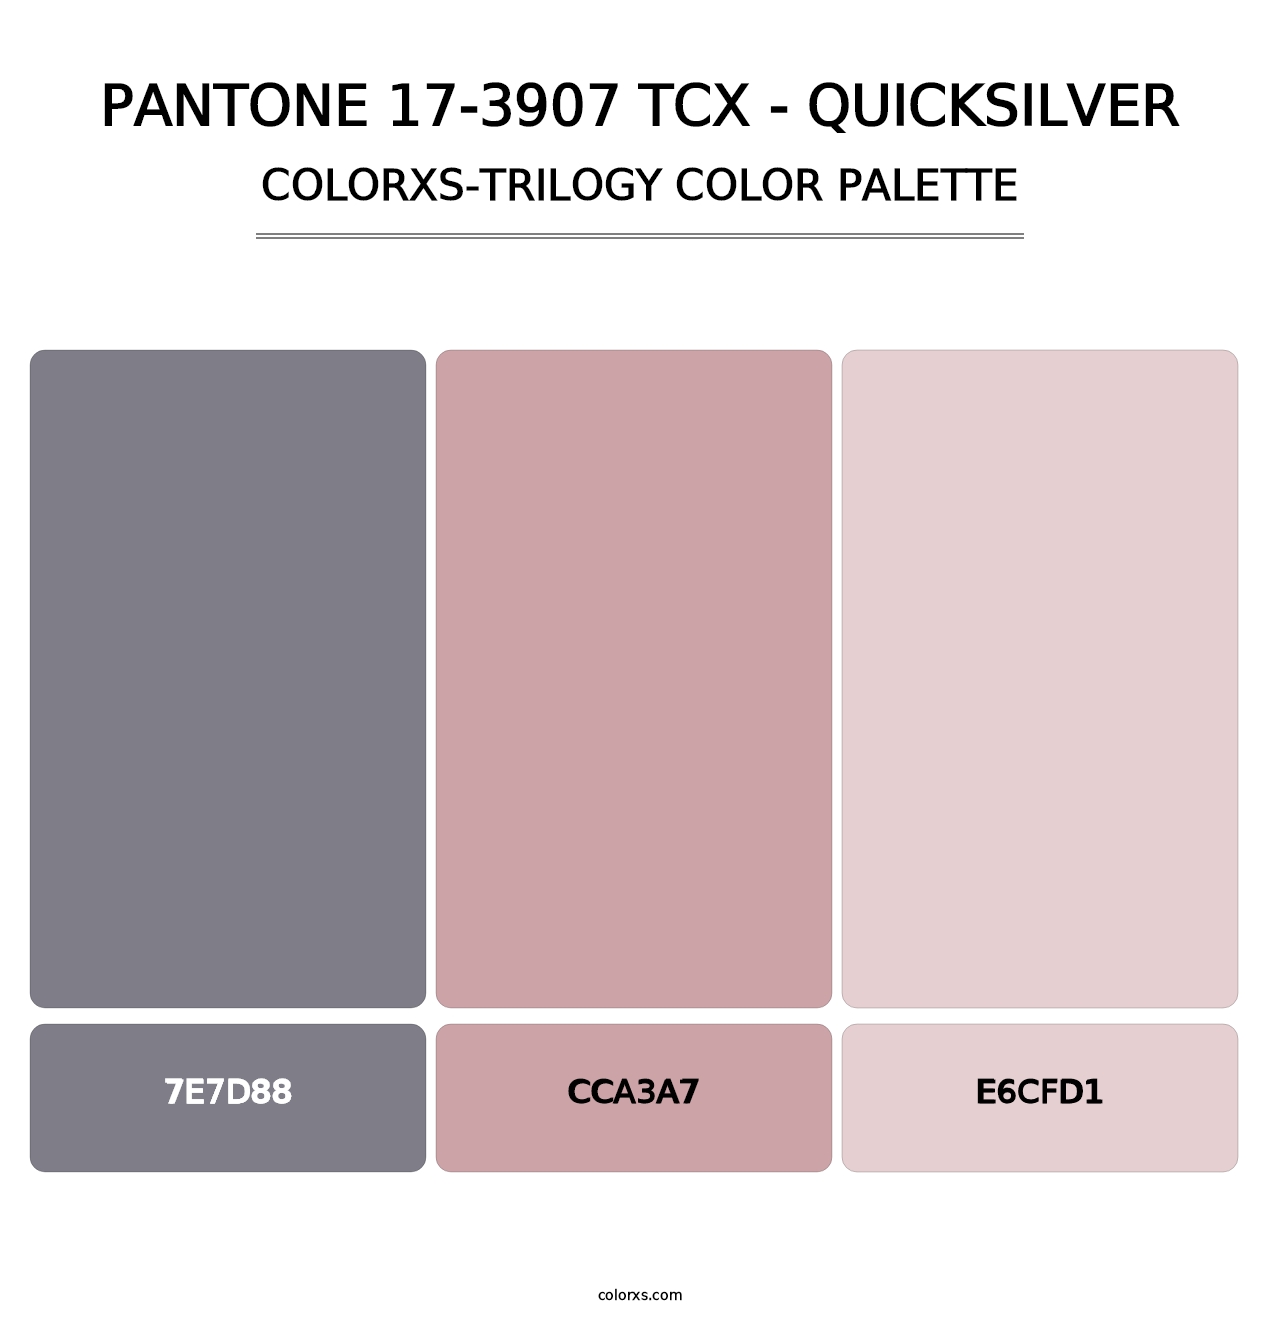 PANTONE 17-3907 TCX - Quicksilver - Colorxs Trilogy Palette